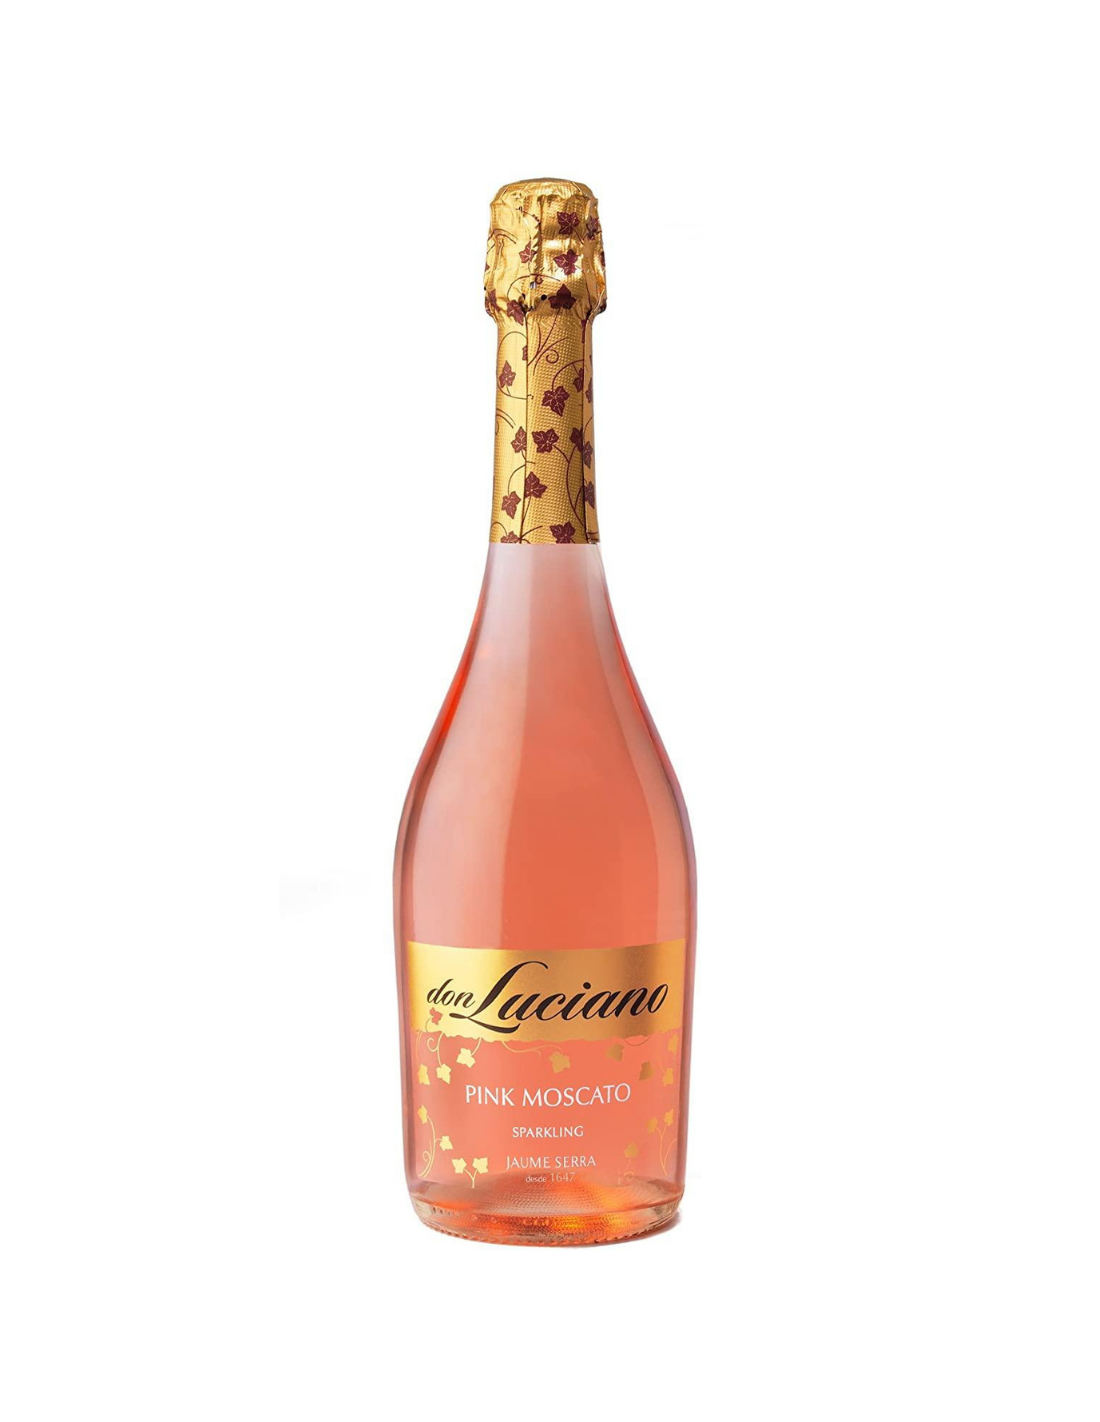 Vin spumant roze Pink Moscato, Don Luciano La Mancha, 0.75L, 7% alc., Spania